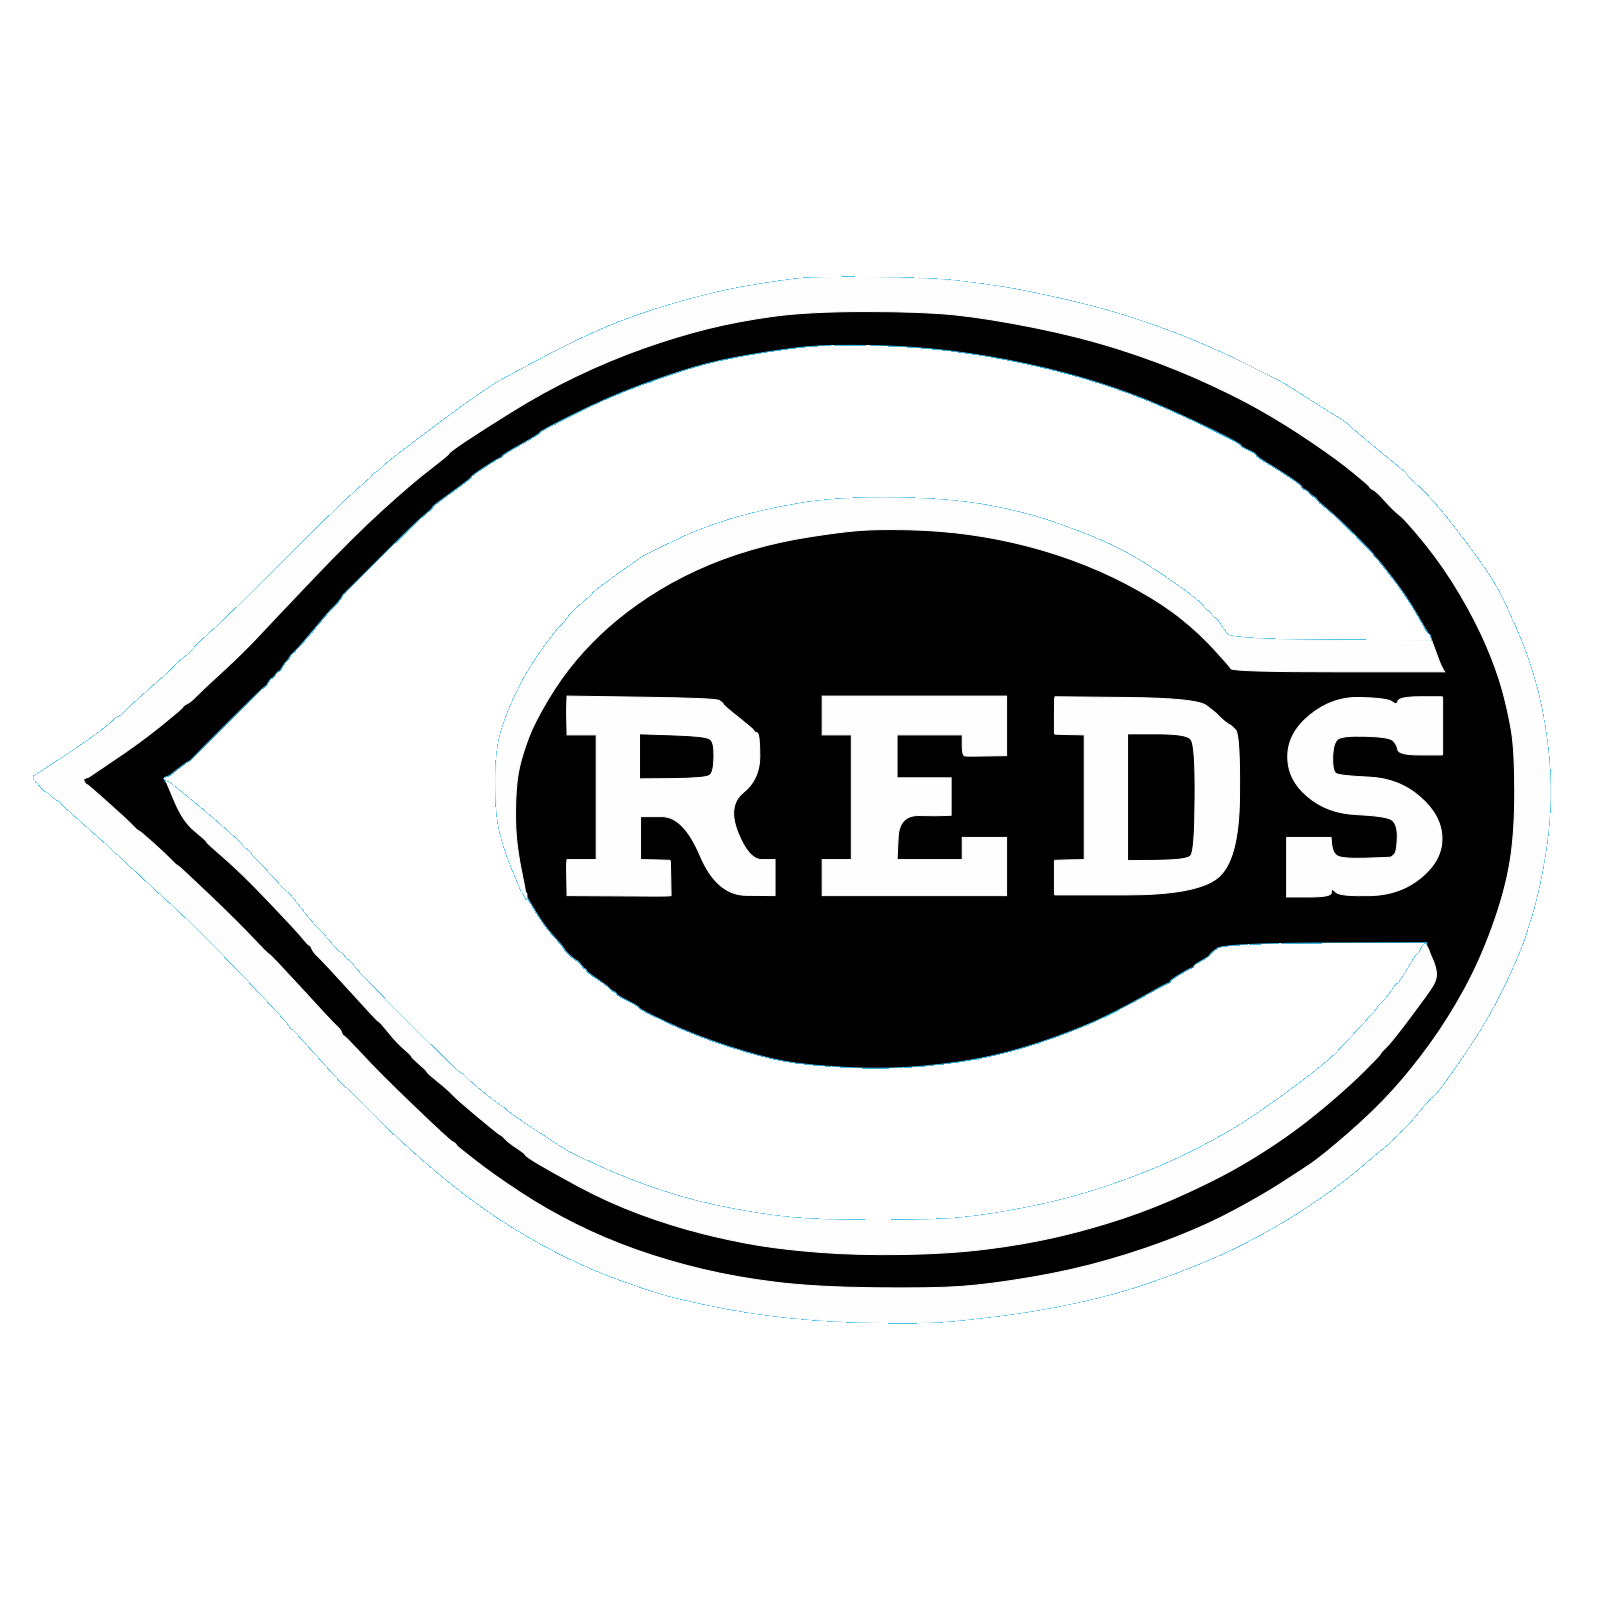 Cincinnati Reds Transparent Images